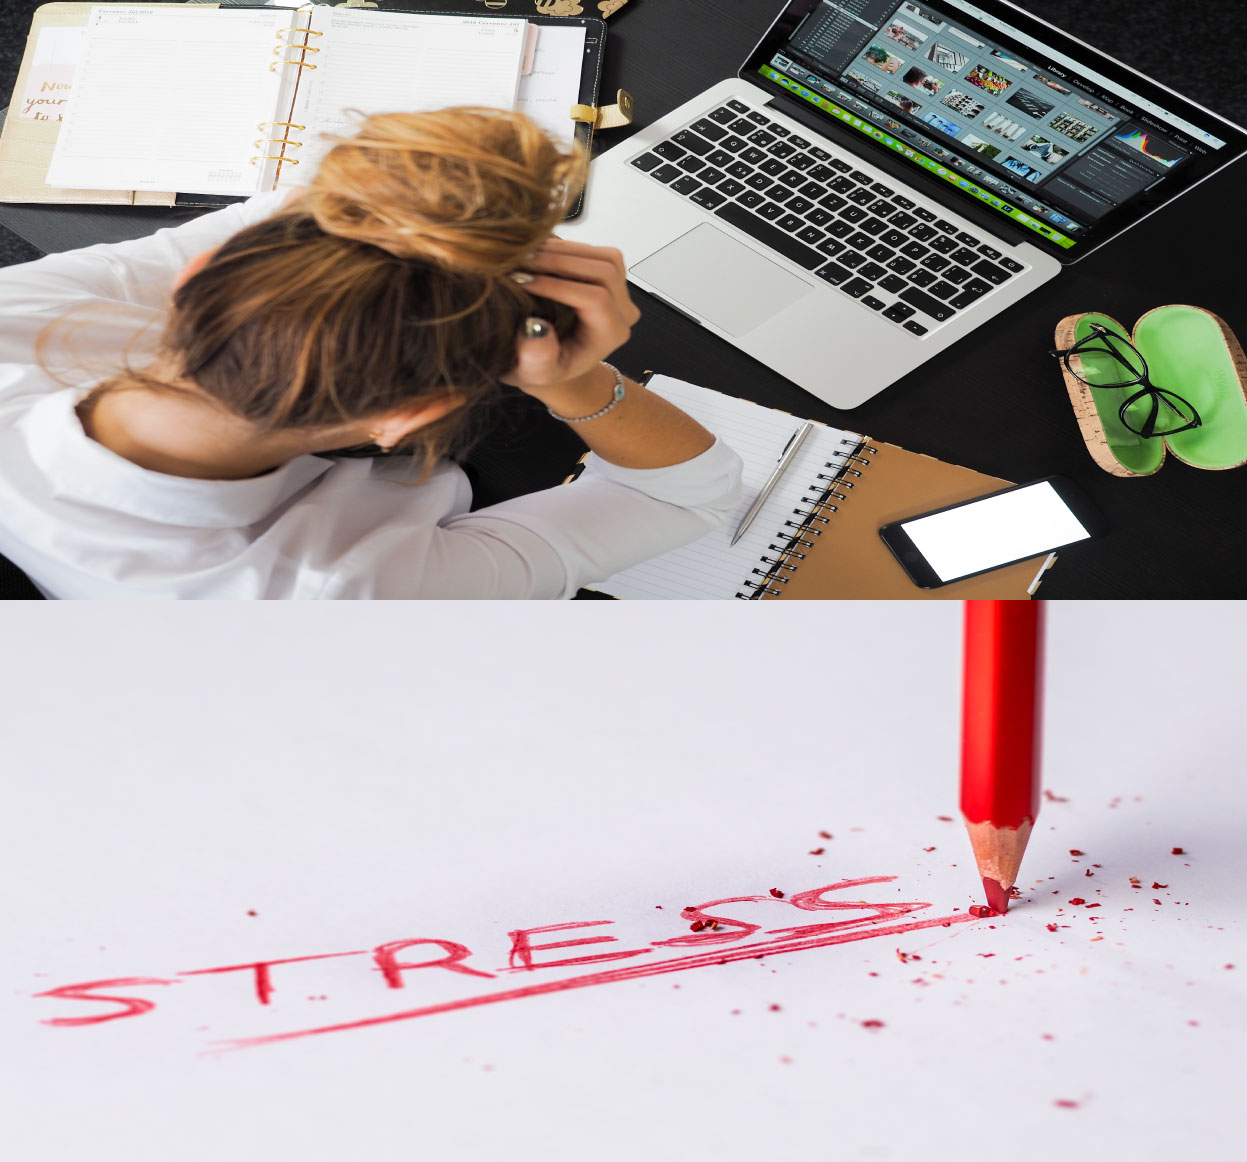 과도한 노트북 사용으로 스트레스를 받고 있는 여자가 머리를 두 손으로 감싸고 있는 이미지와 스트레스라는 글자를 적고 있는 붉은색 연필이 보이는 이미지.